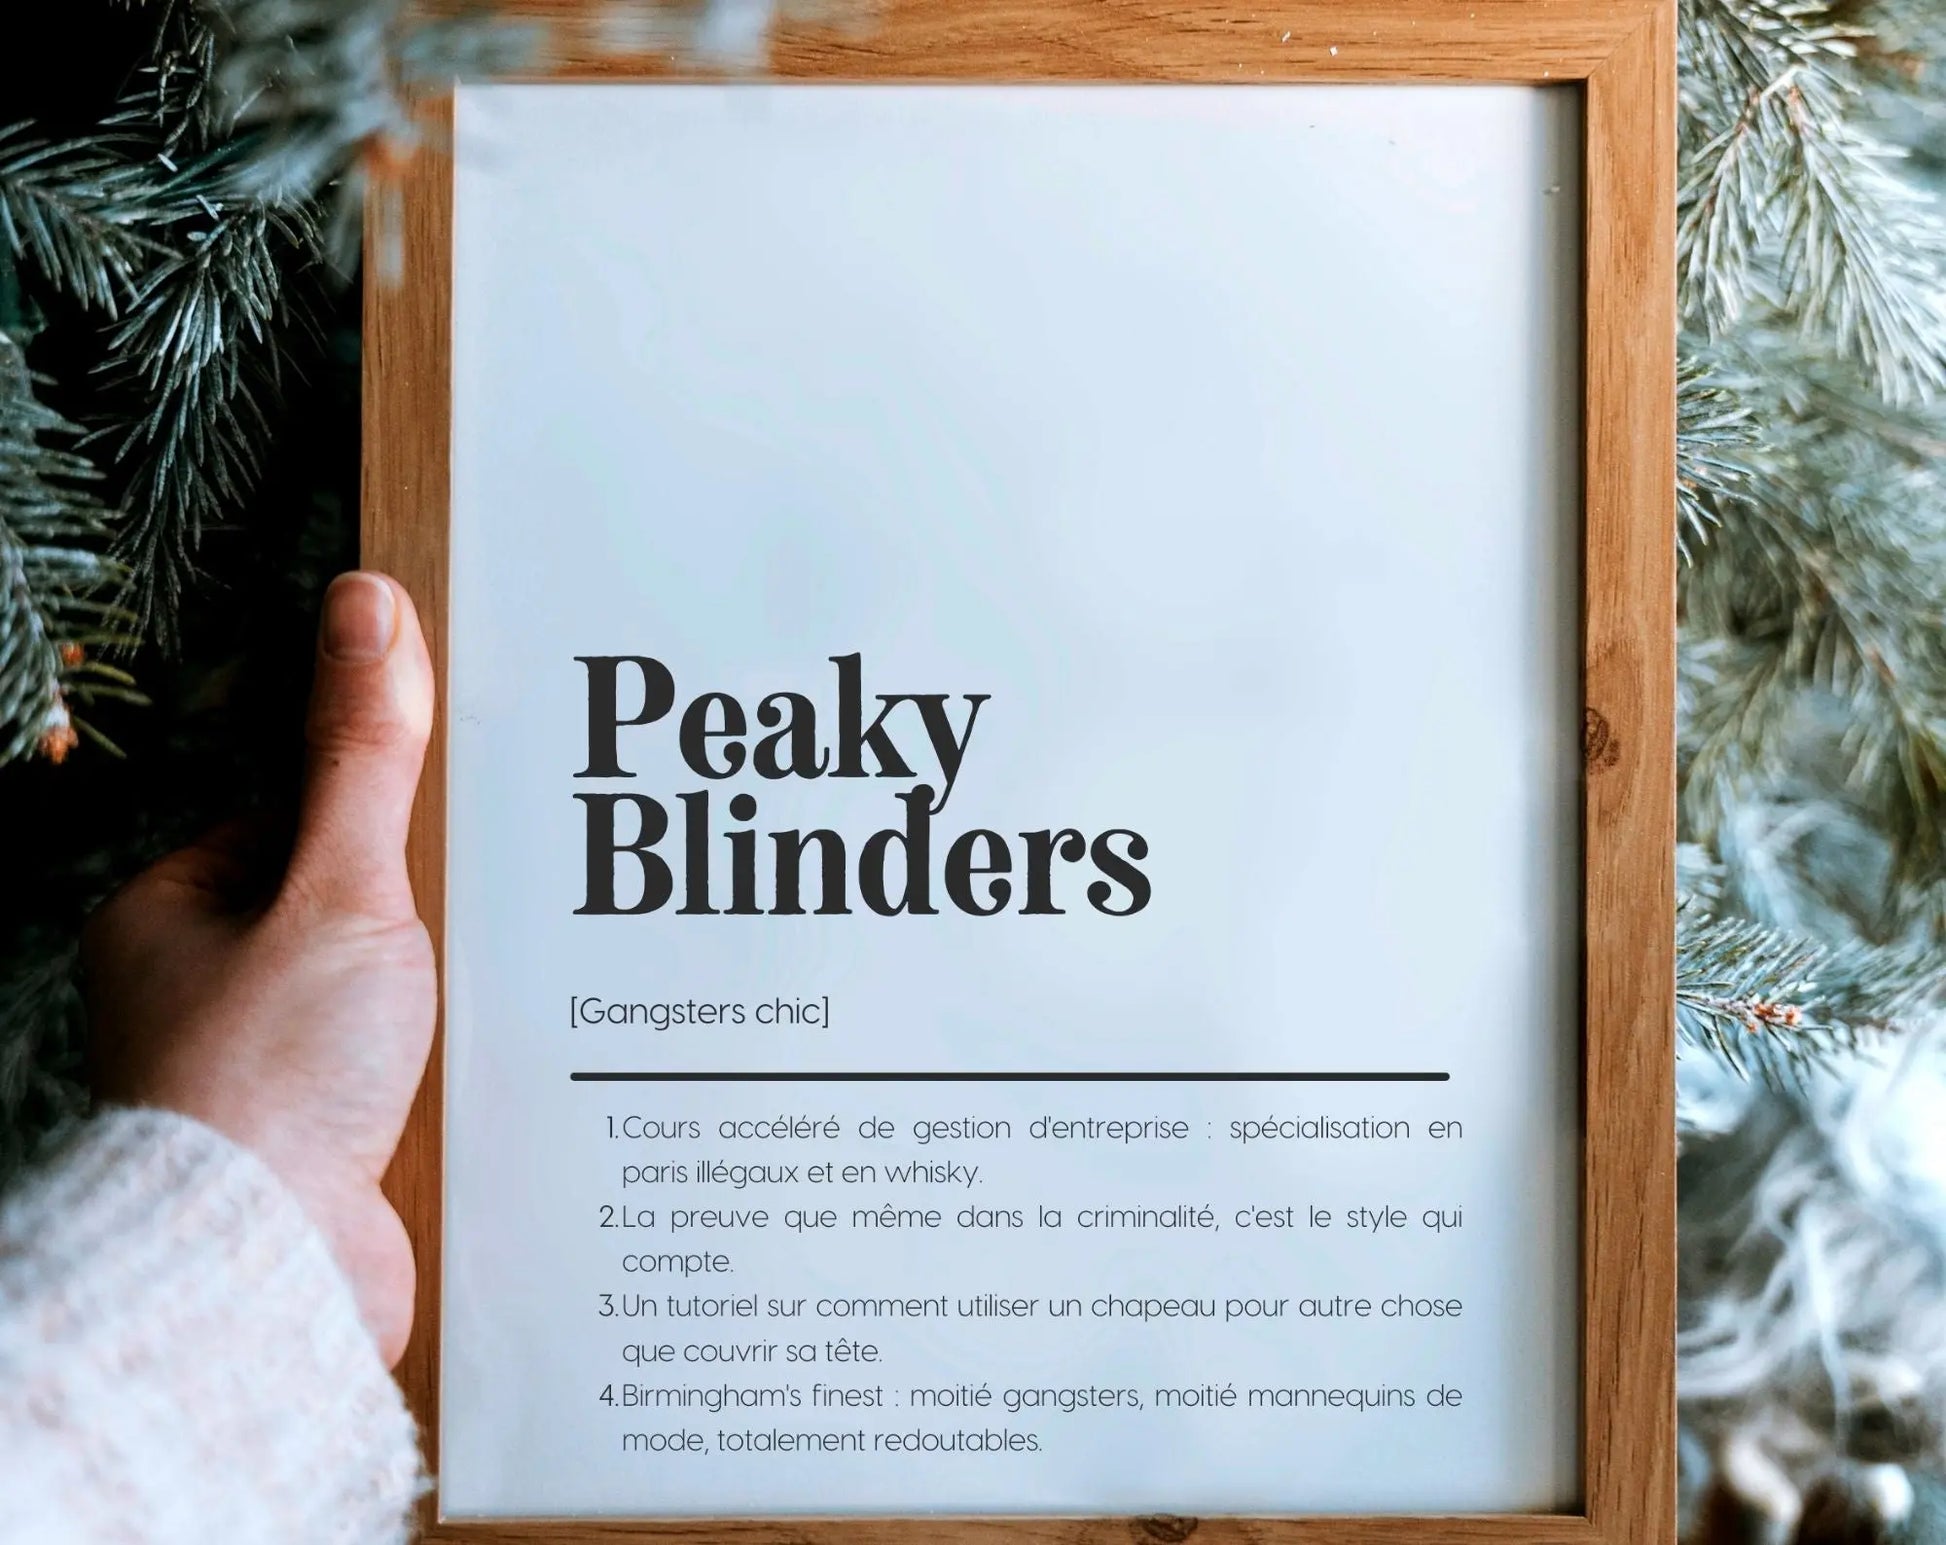 Affiche définition parodique Peaky Blinders - Affiche définition humour série FLTMfrance